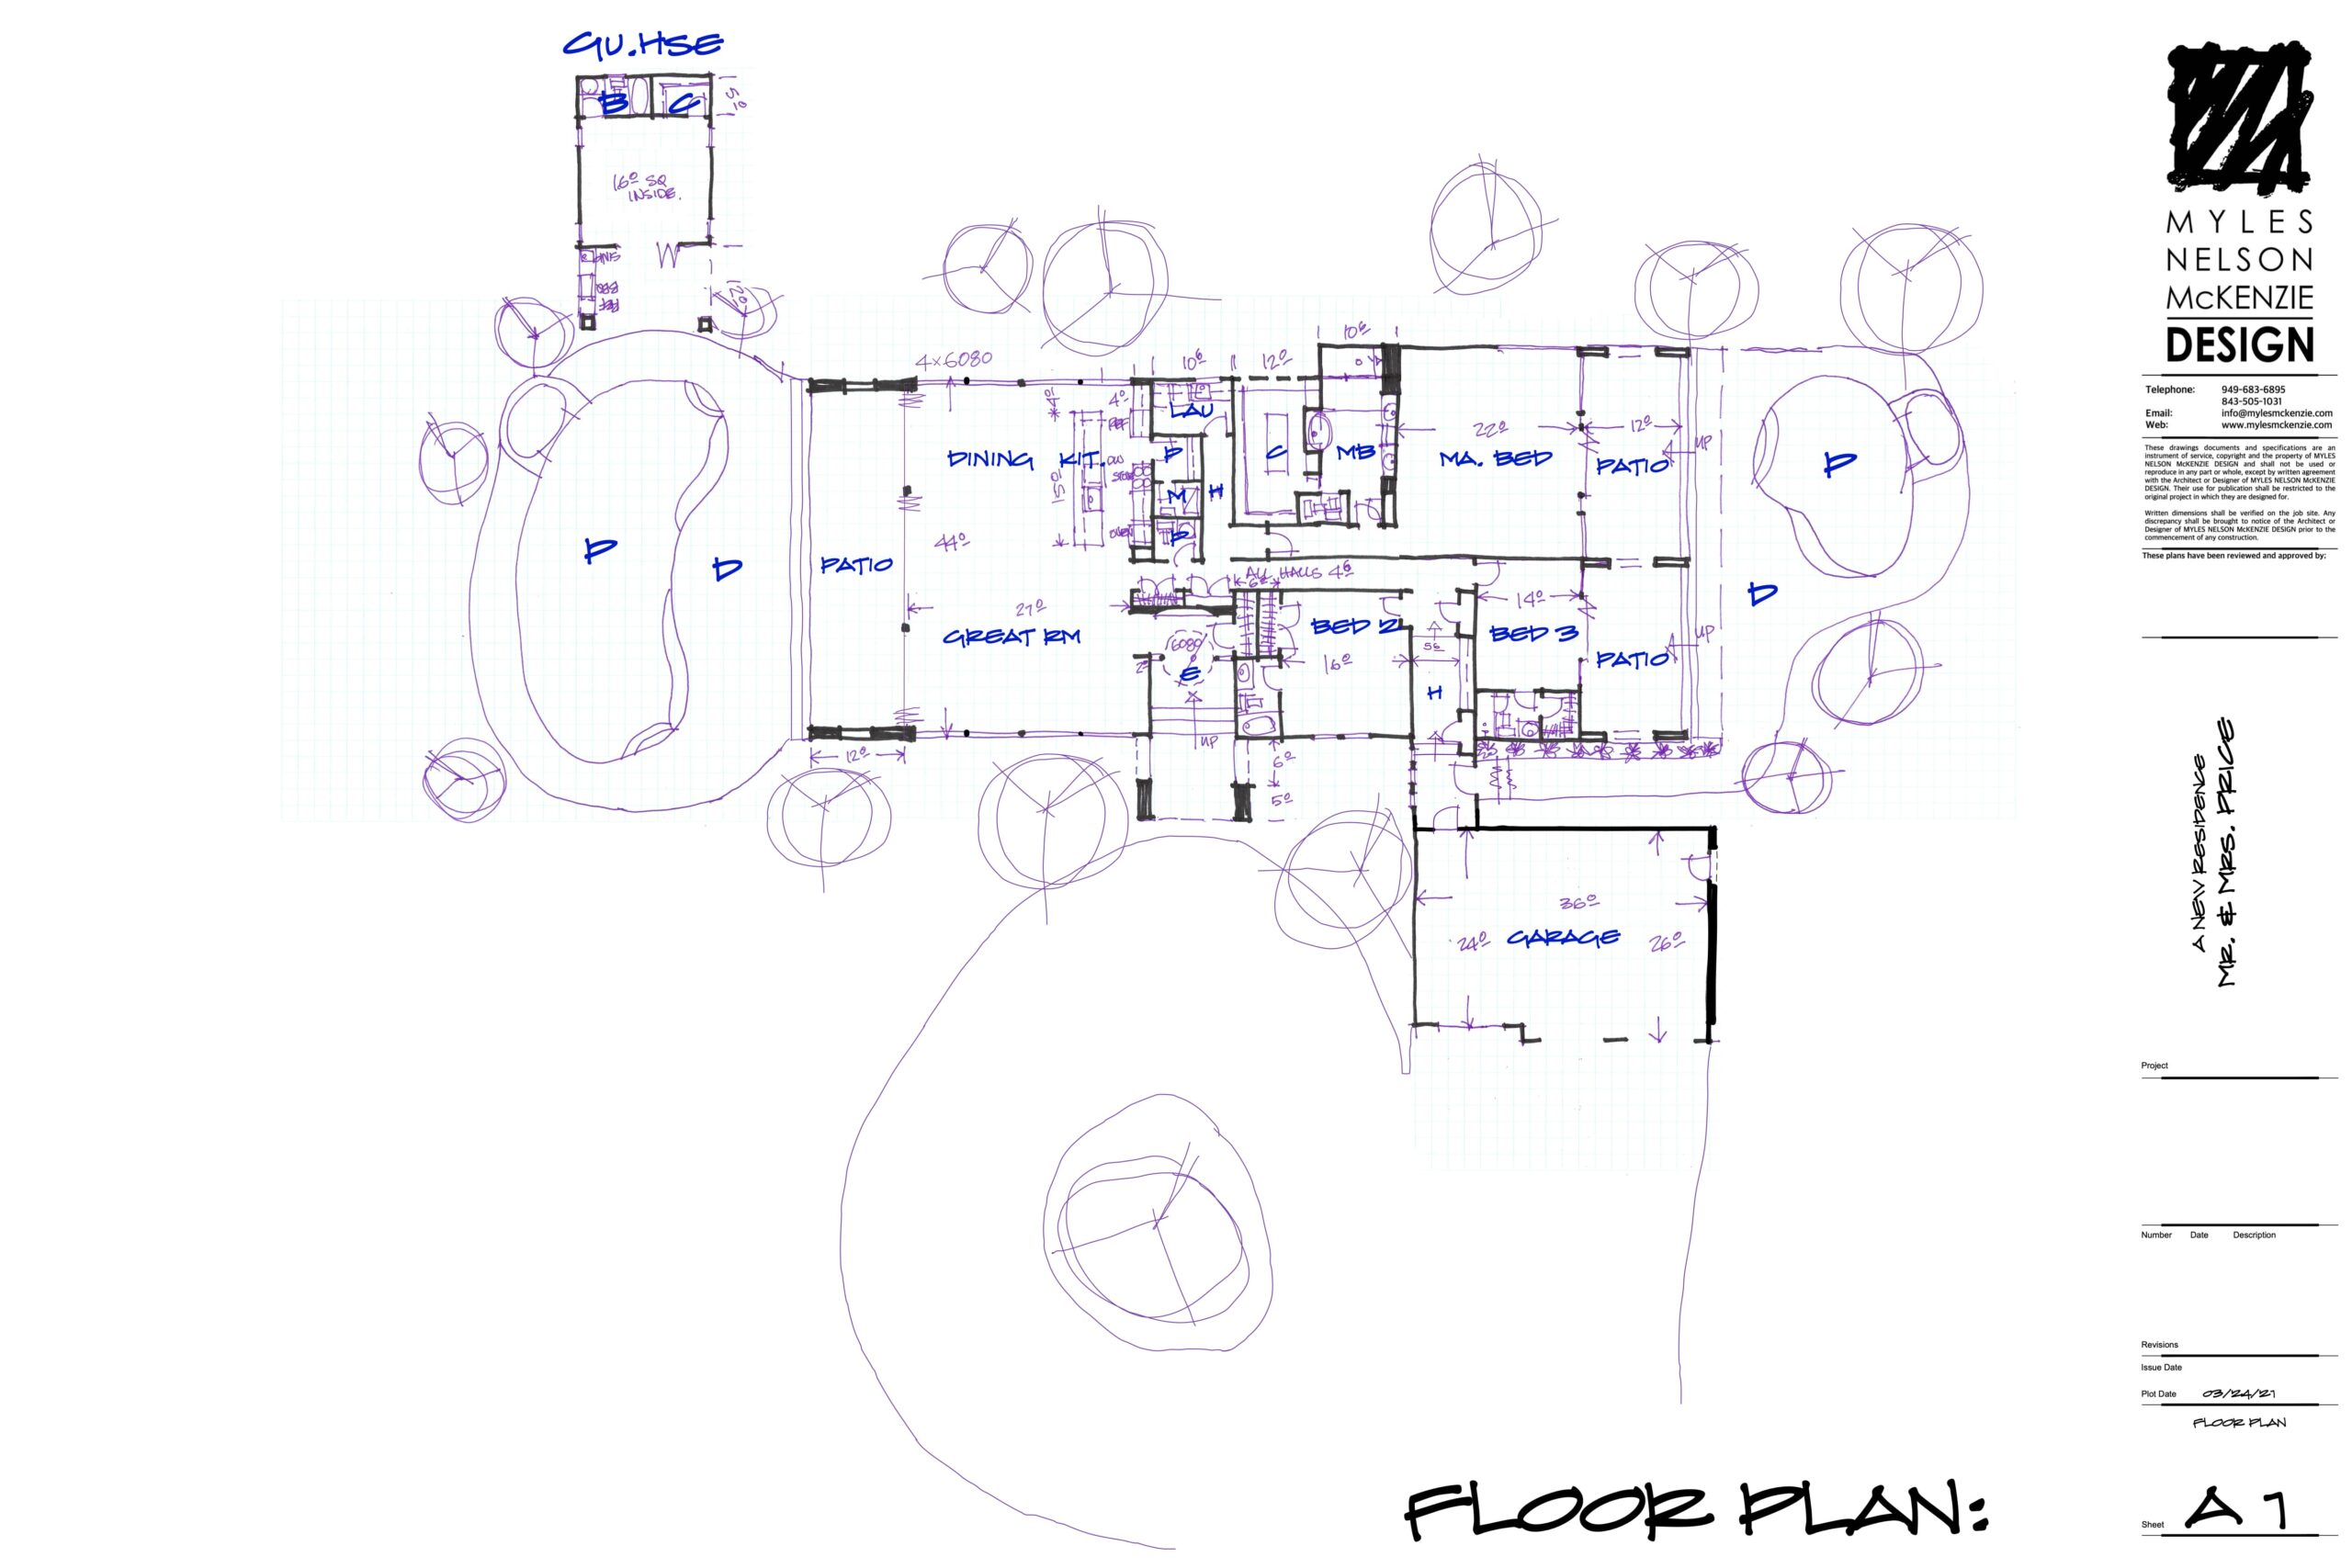 Myles Nelson McKenzie Design-Las Vegas Modern Home Design-Concept Floor Plan Design.